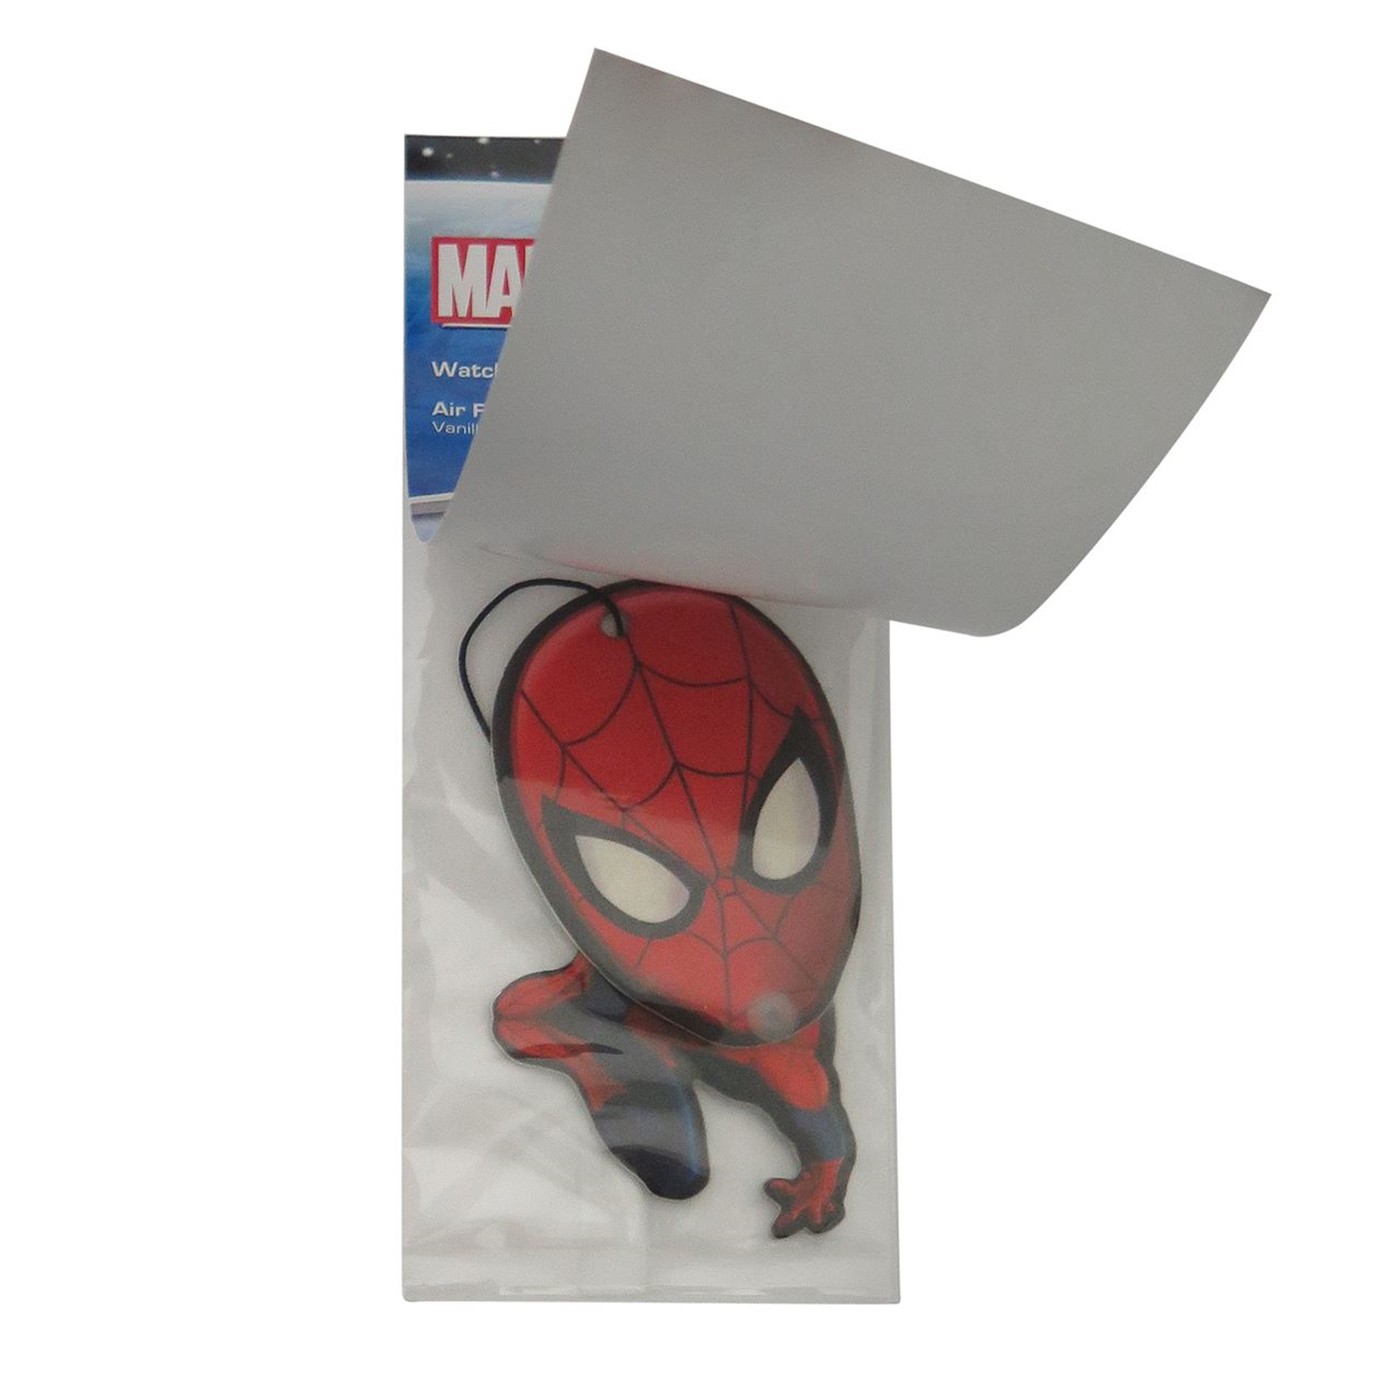 Spider-Man Wiggle Vanilla Air Freshener